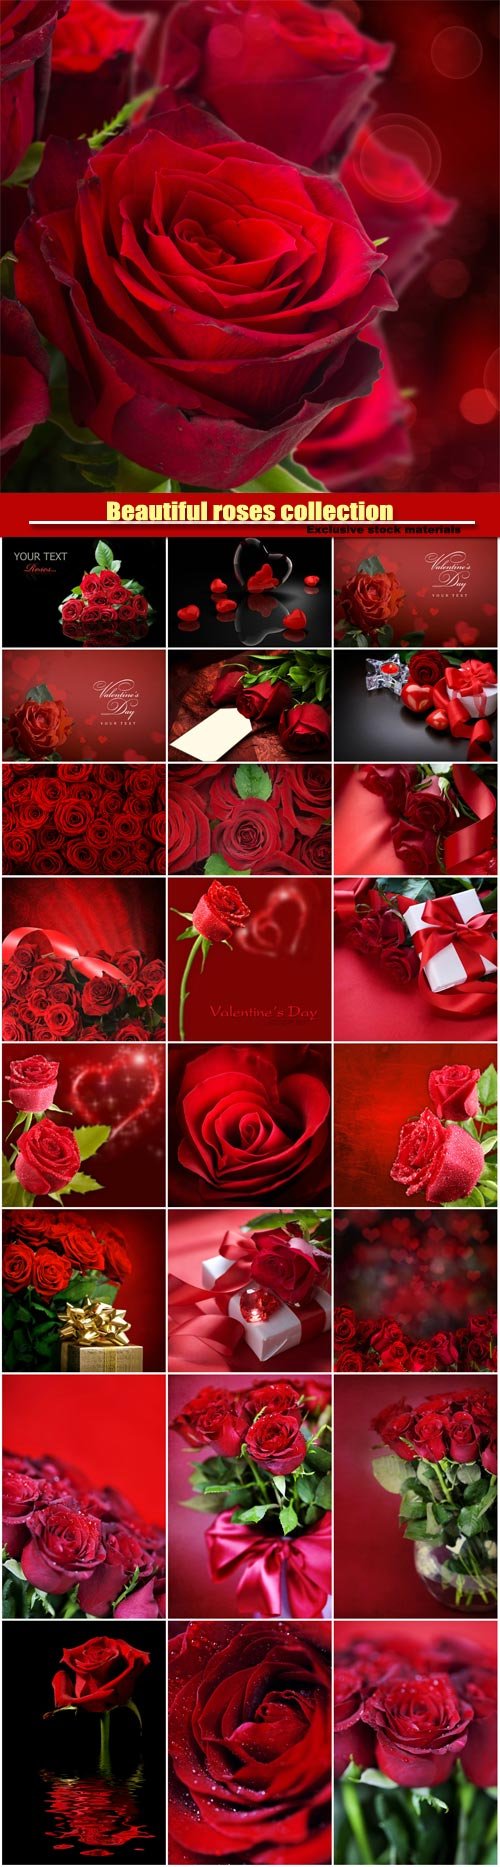 Hoa hồng lãng mạn là biểu tượng cho tình yêu và sự trân quý. Khi nhìn vào hình ảnh của loài hoa này, bạn sẽ cảm thấy tràn đầy cảm xúc và tình cảm. Những cánh hoa màu đỏ tươi, phủ đầy mùi thơm thật sự là một tác phẩm nghệ thuật. Hãy xem hình ảnh để cảm nhận sức hút của hoa hồng lãng mạn.